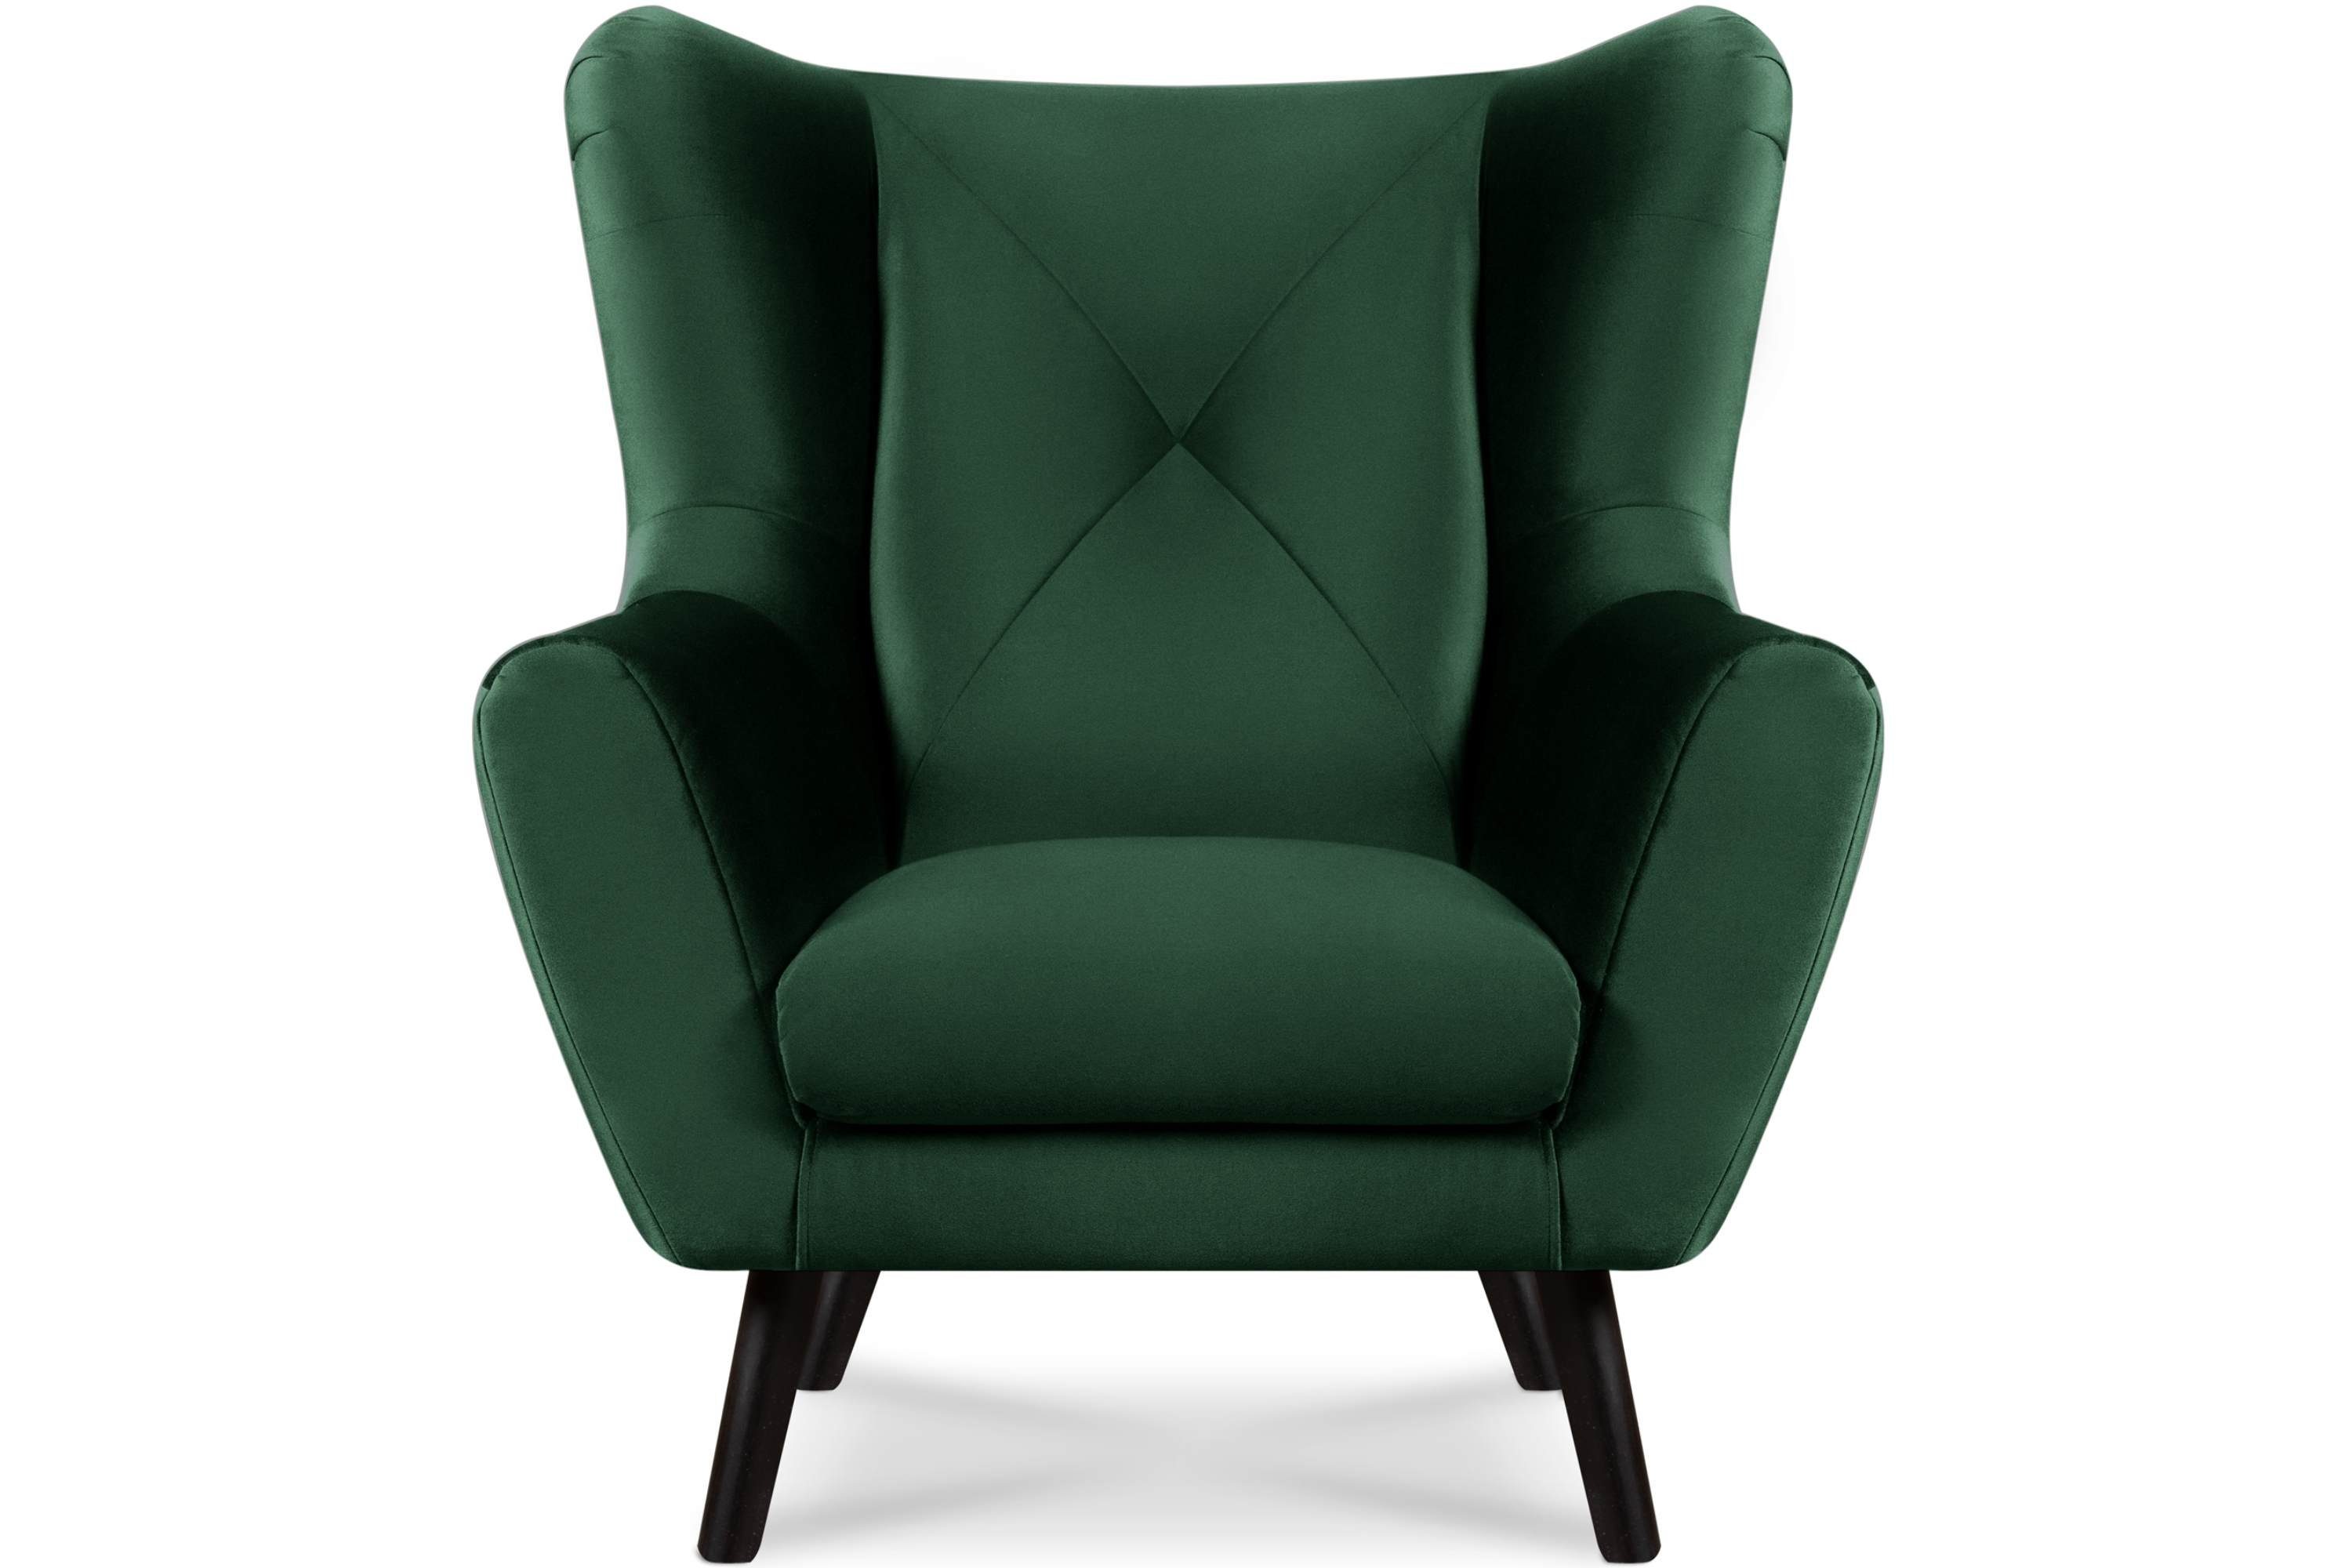 Konsimo Ohrensessel MIRO Sessel mit Armlehne, bequemer Schaumstoff im Sitz, wasserabweisender Oberstoff dunkelgrün | dunkelgrün